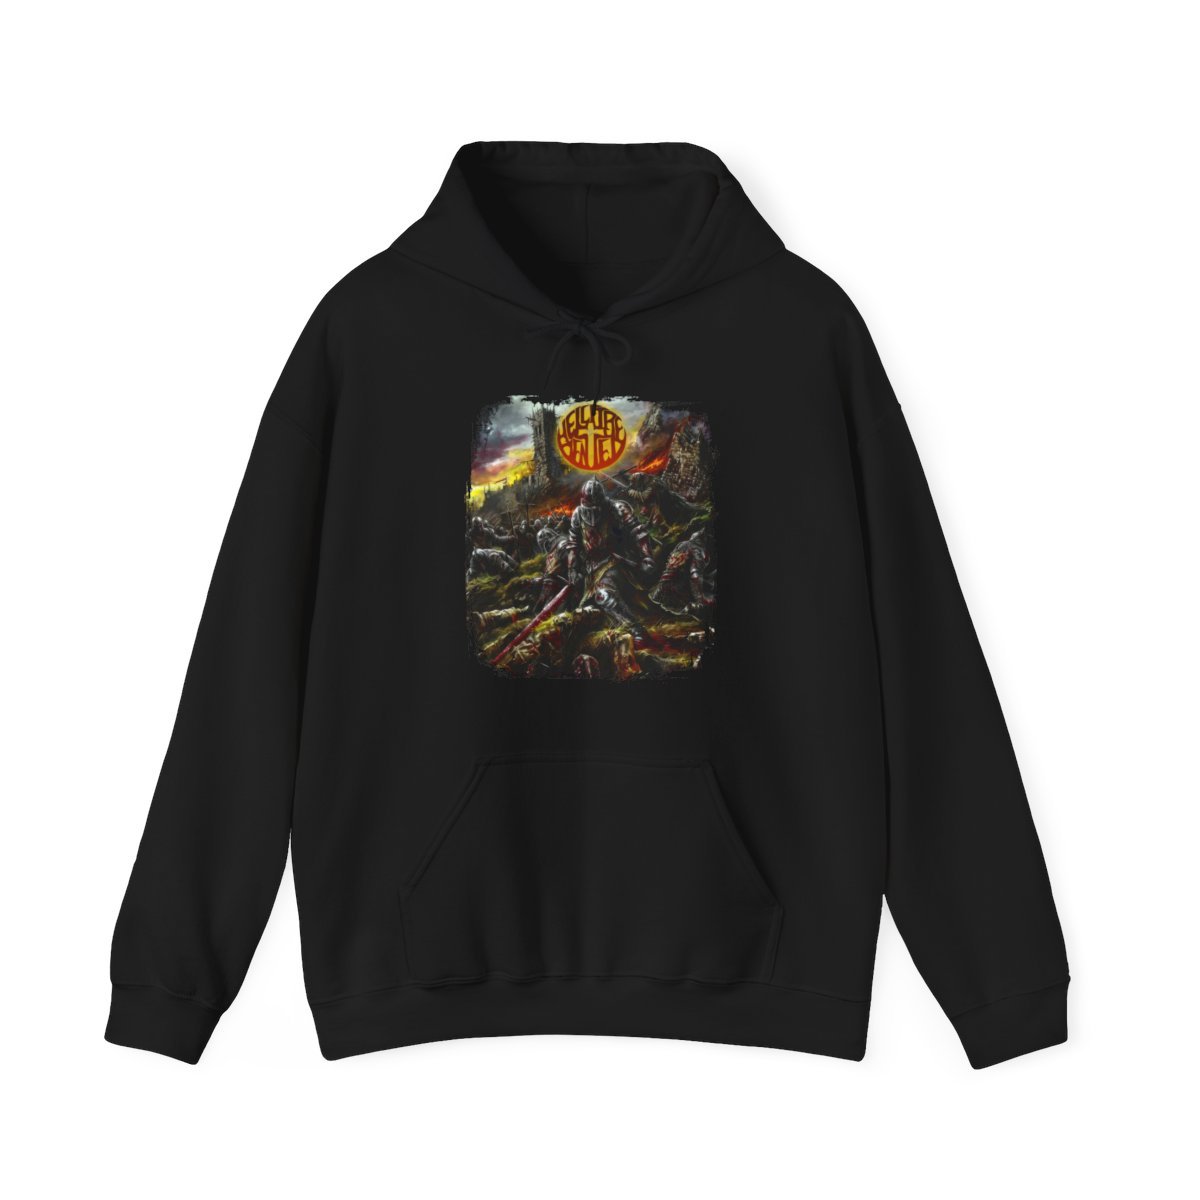 Hellfire Denied – Crusades (Broken Curfew) Pullover Hooded Sweatshirt